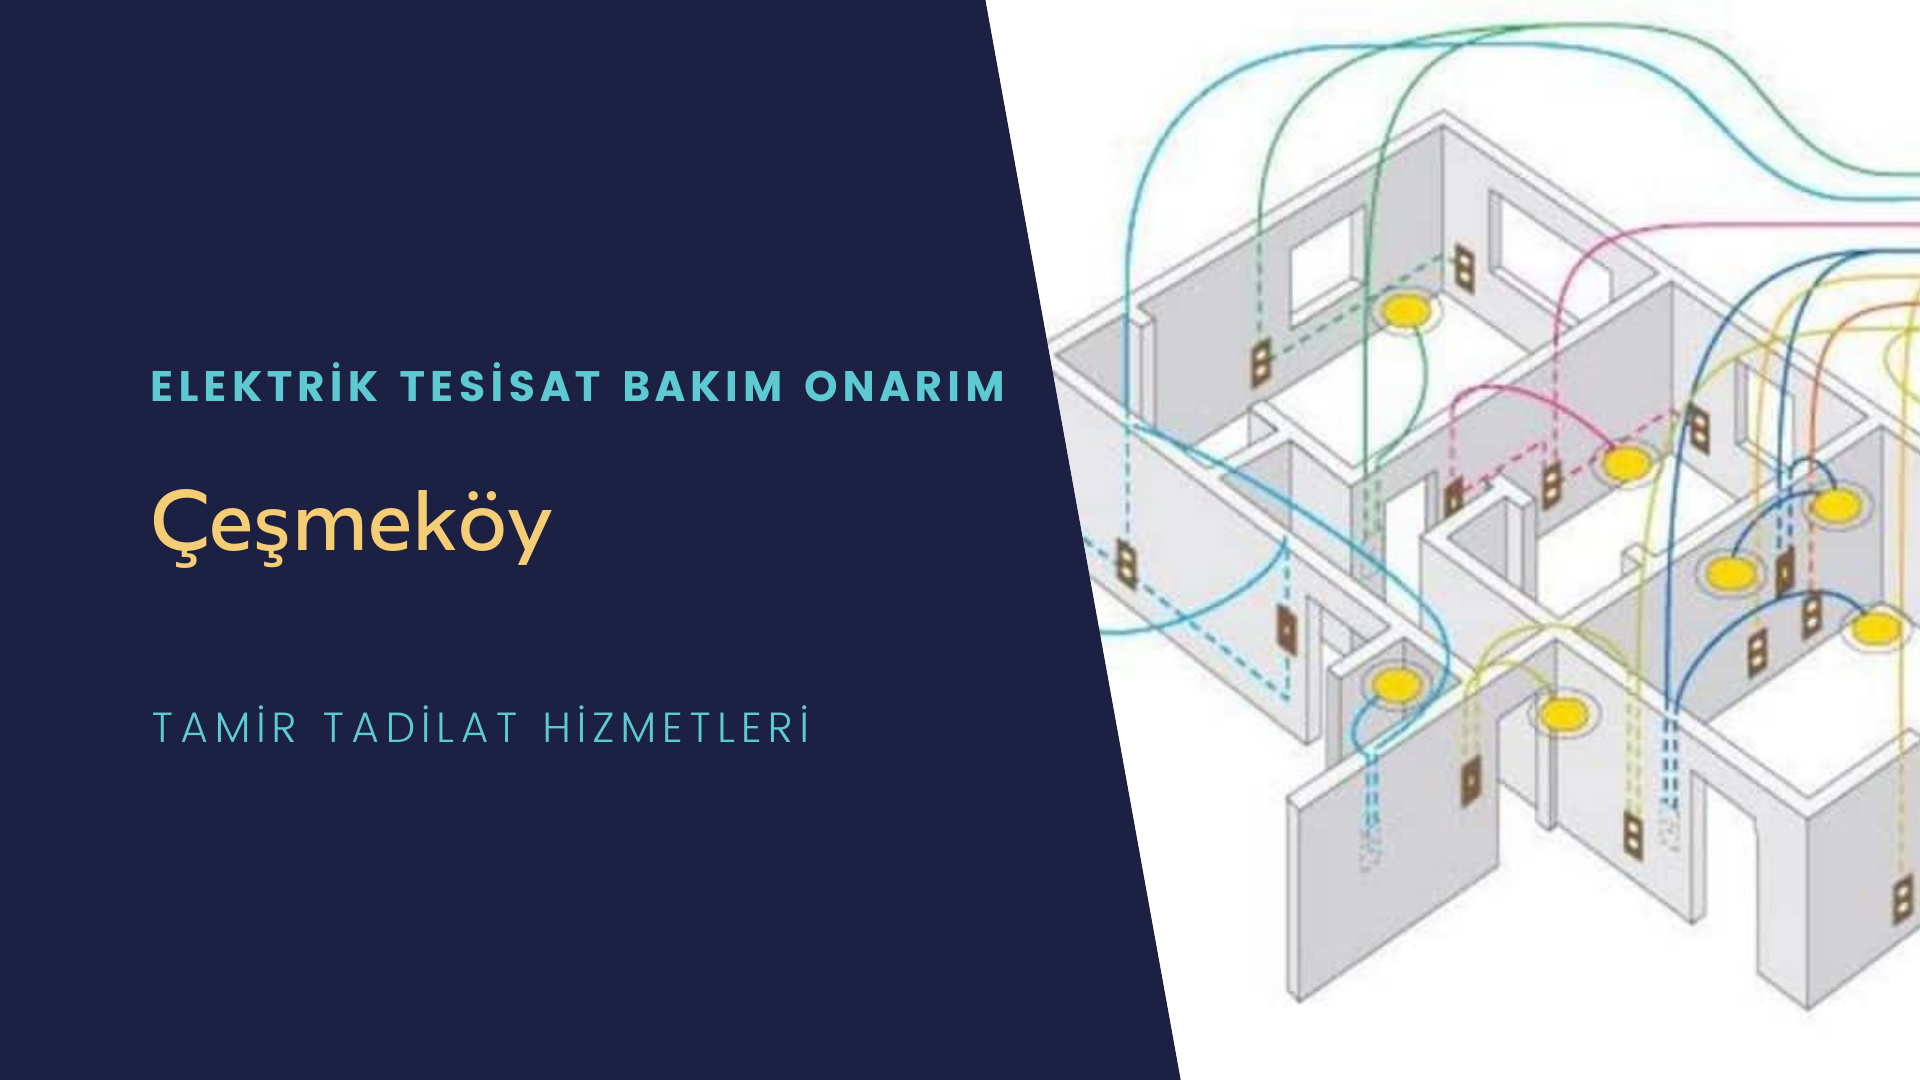 Çeşmeköy'de elektrik tesisatı ustalarımı arıyorsunuz doğru adrestenizi Çeşmeköy elektrik tesisatı ustalarımız 7/24 sizlere hizmet vermekten mutluluk duyar.